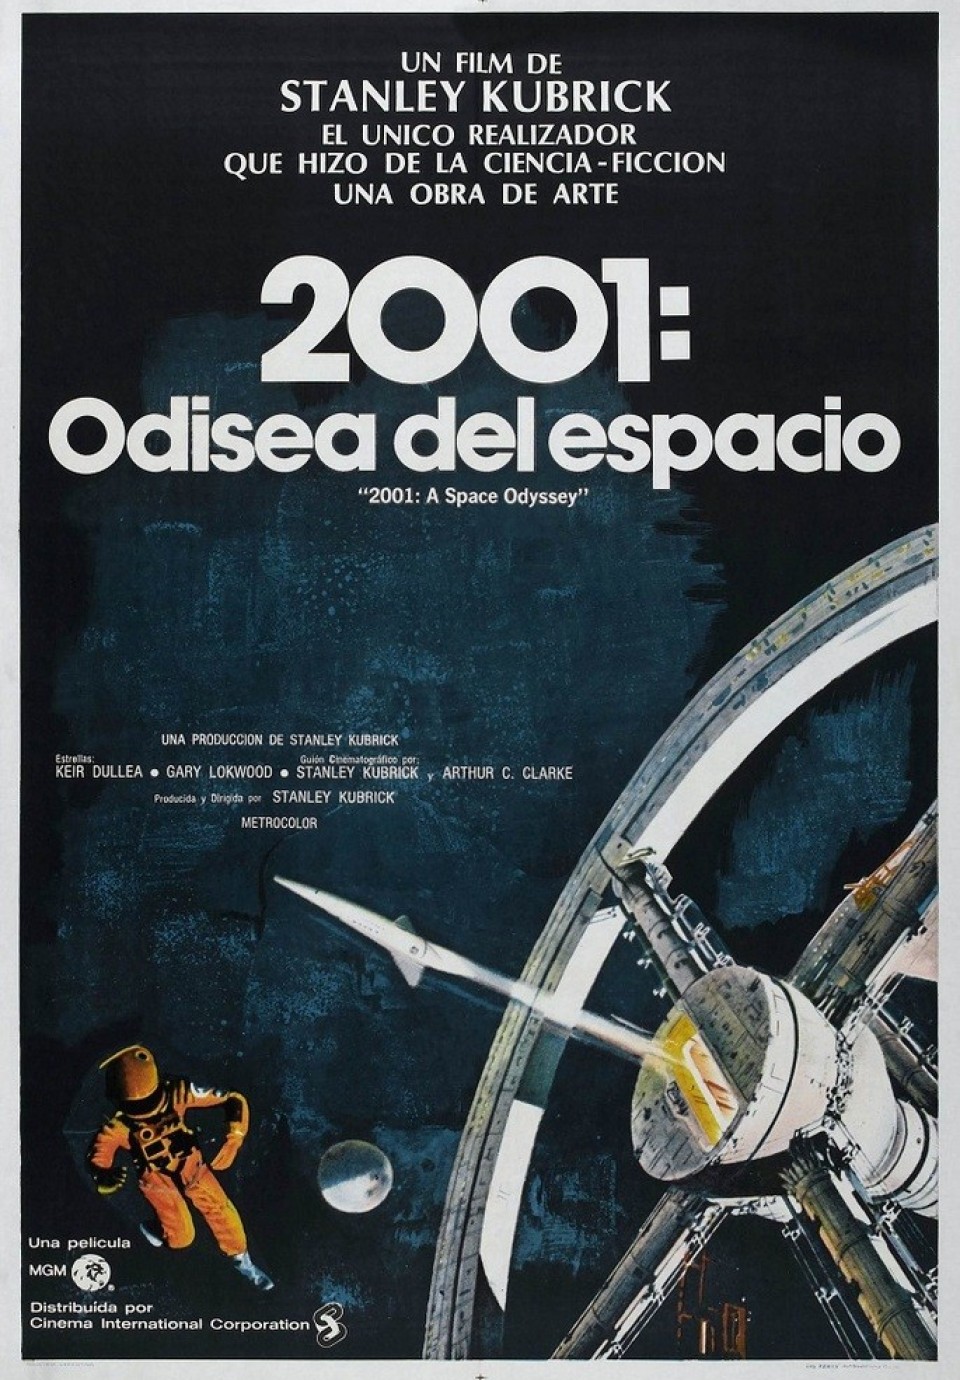 Imagen 2001 Odisea en el espacio